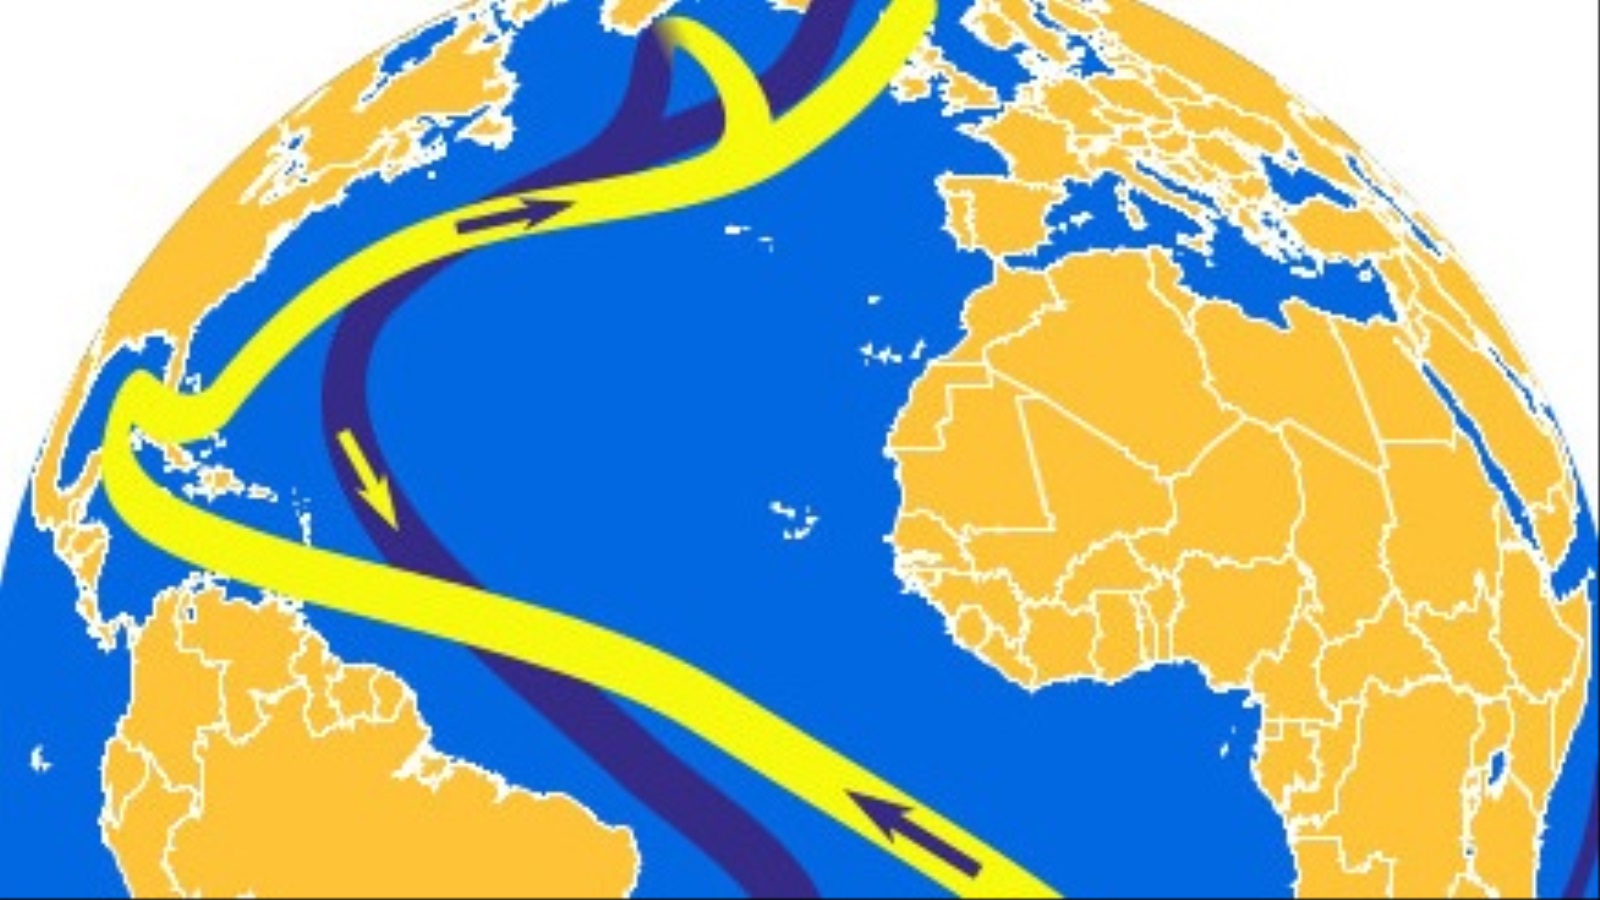 ‪تيار شمال الأطلسي جزء من التيارات الحرارية التي تجوب المحيطات‬ (جامعة غروننغن)